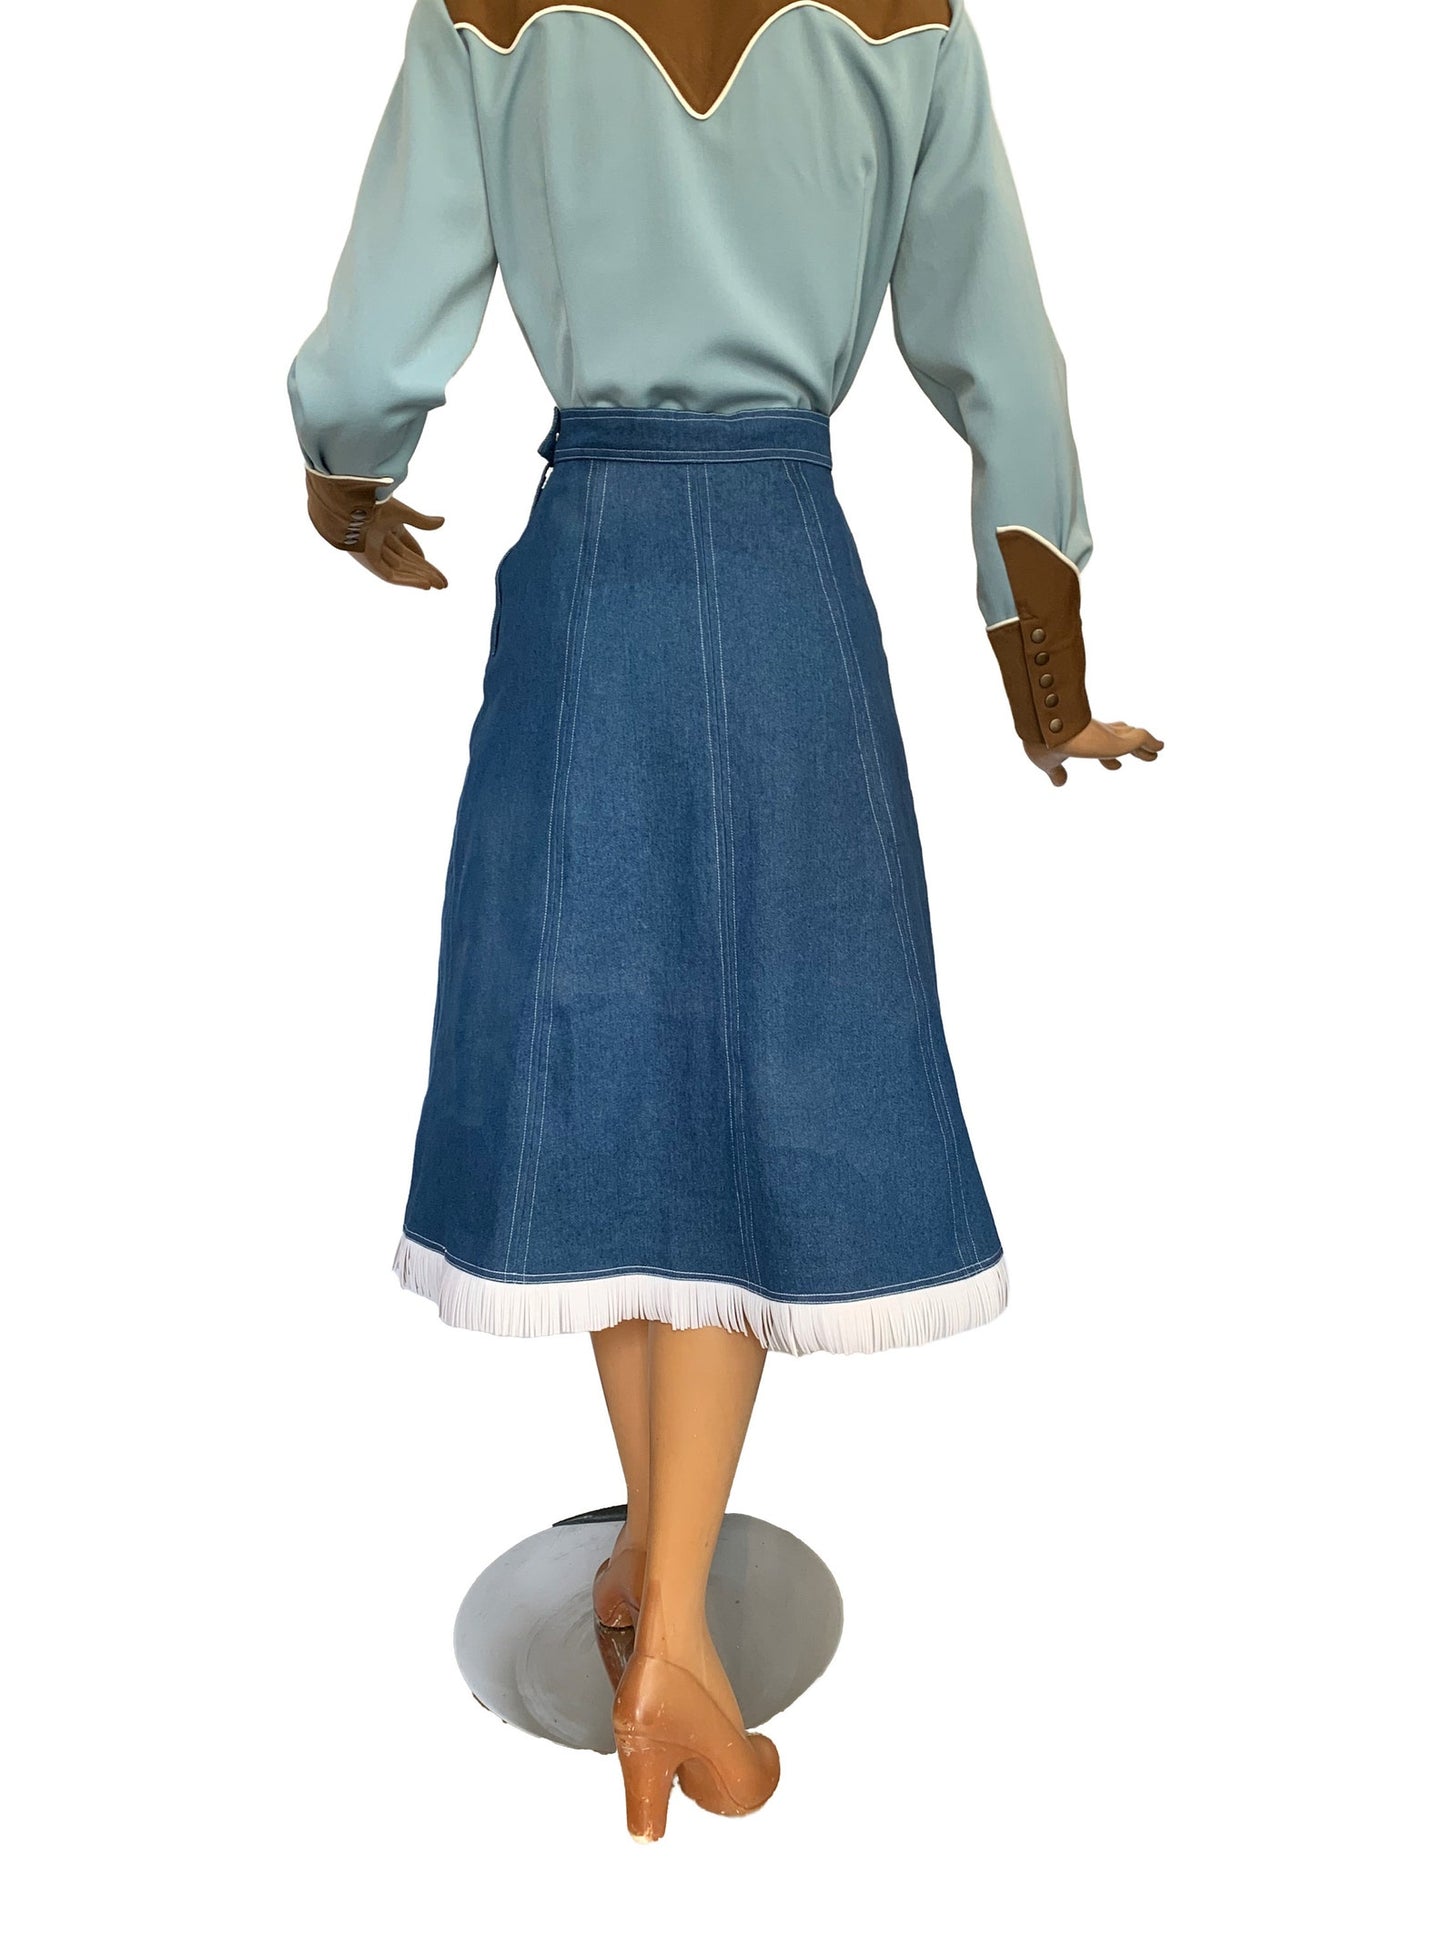 Valerie Denim Fringe 1940s Style Western Skirt